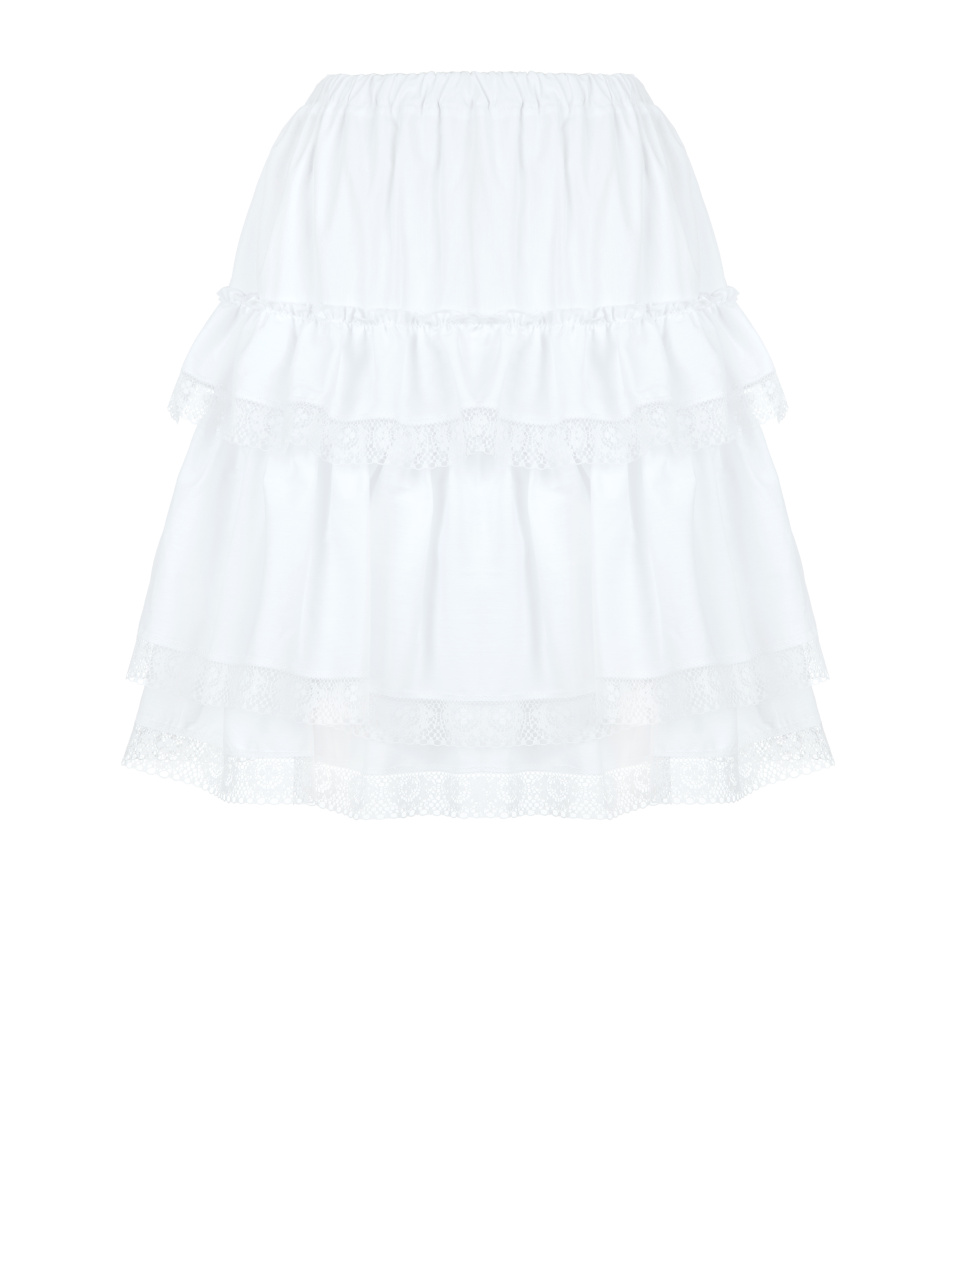 Белая хлопковая юбка с воланами и кружевом, 1